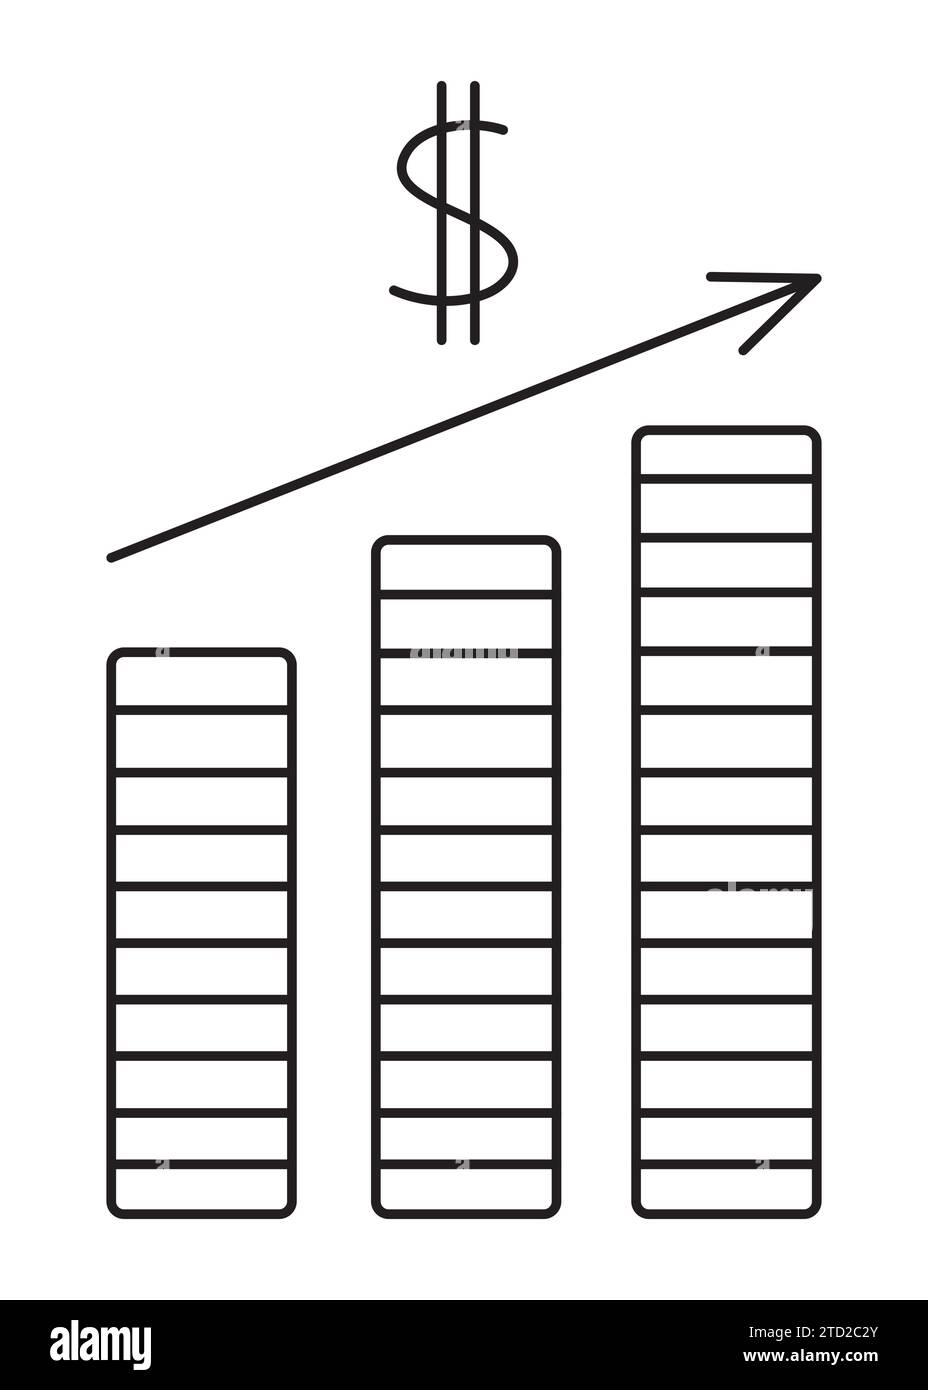 Grafico finanziario, guadagni in dollari. Semplice illustrazione vettoriale della linea nera della crescita salariale e dell'aumento del reddito Illustrazione Vettoriale